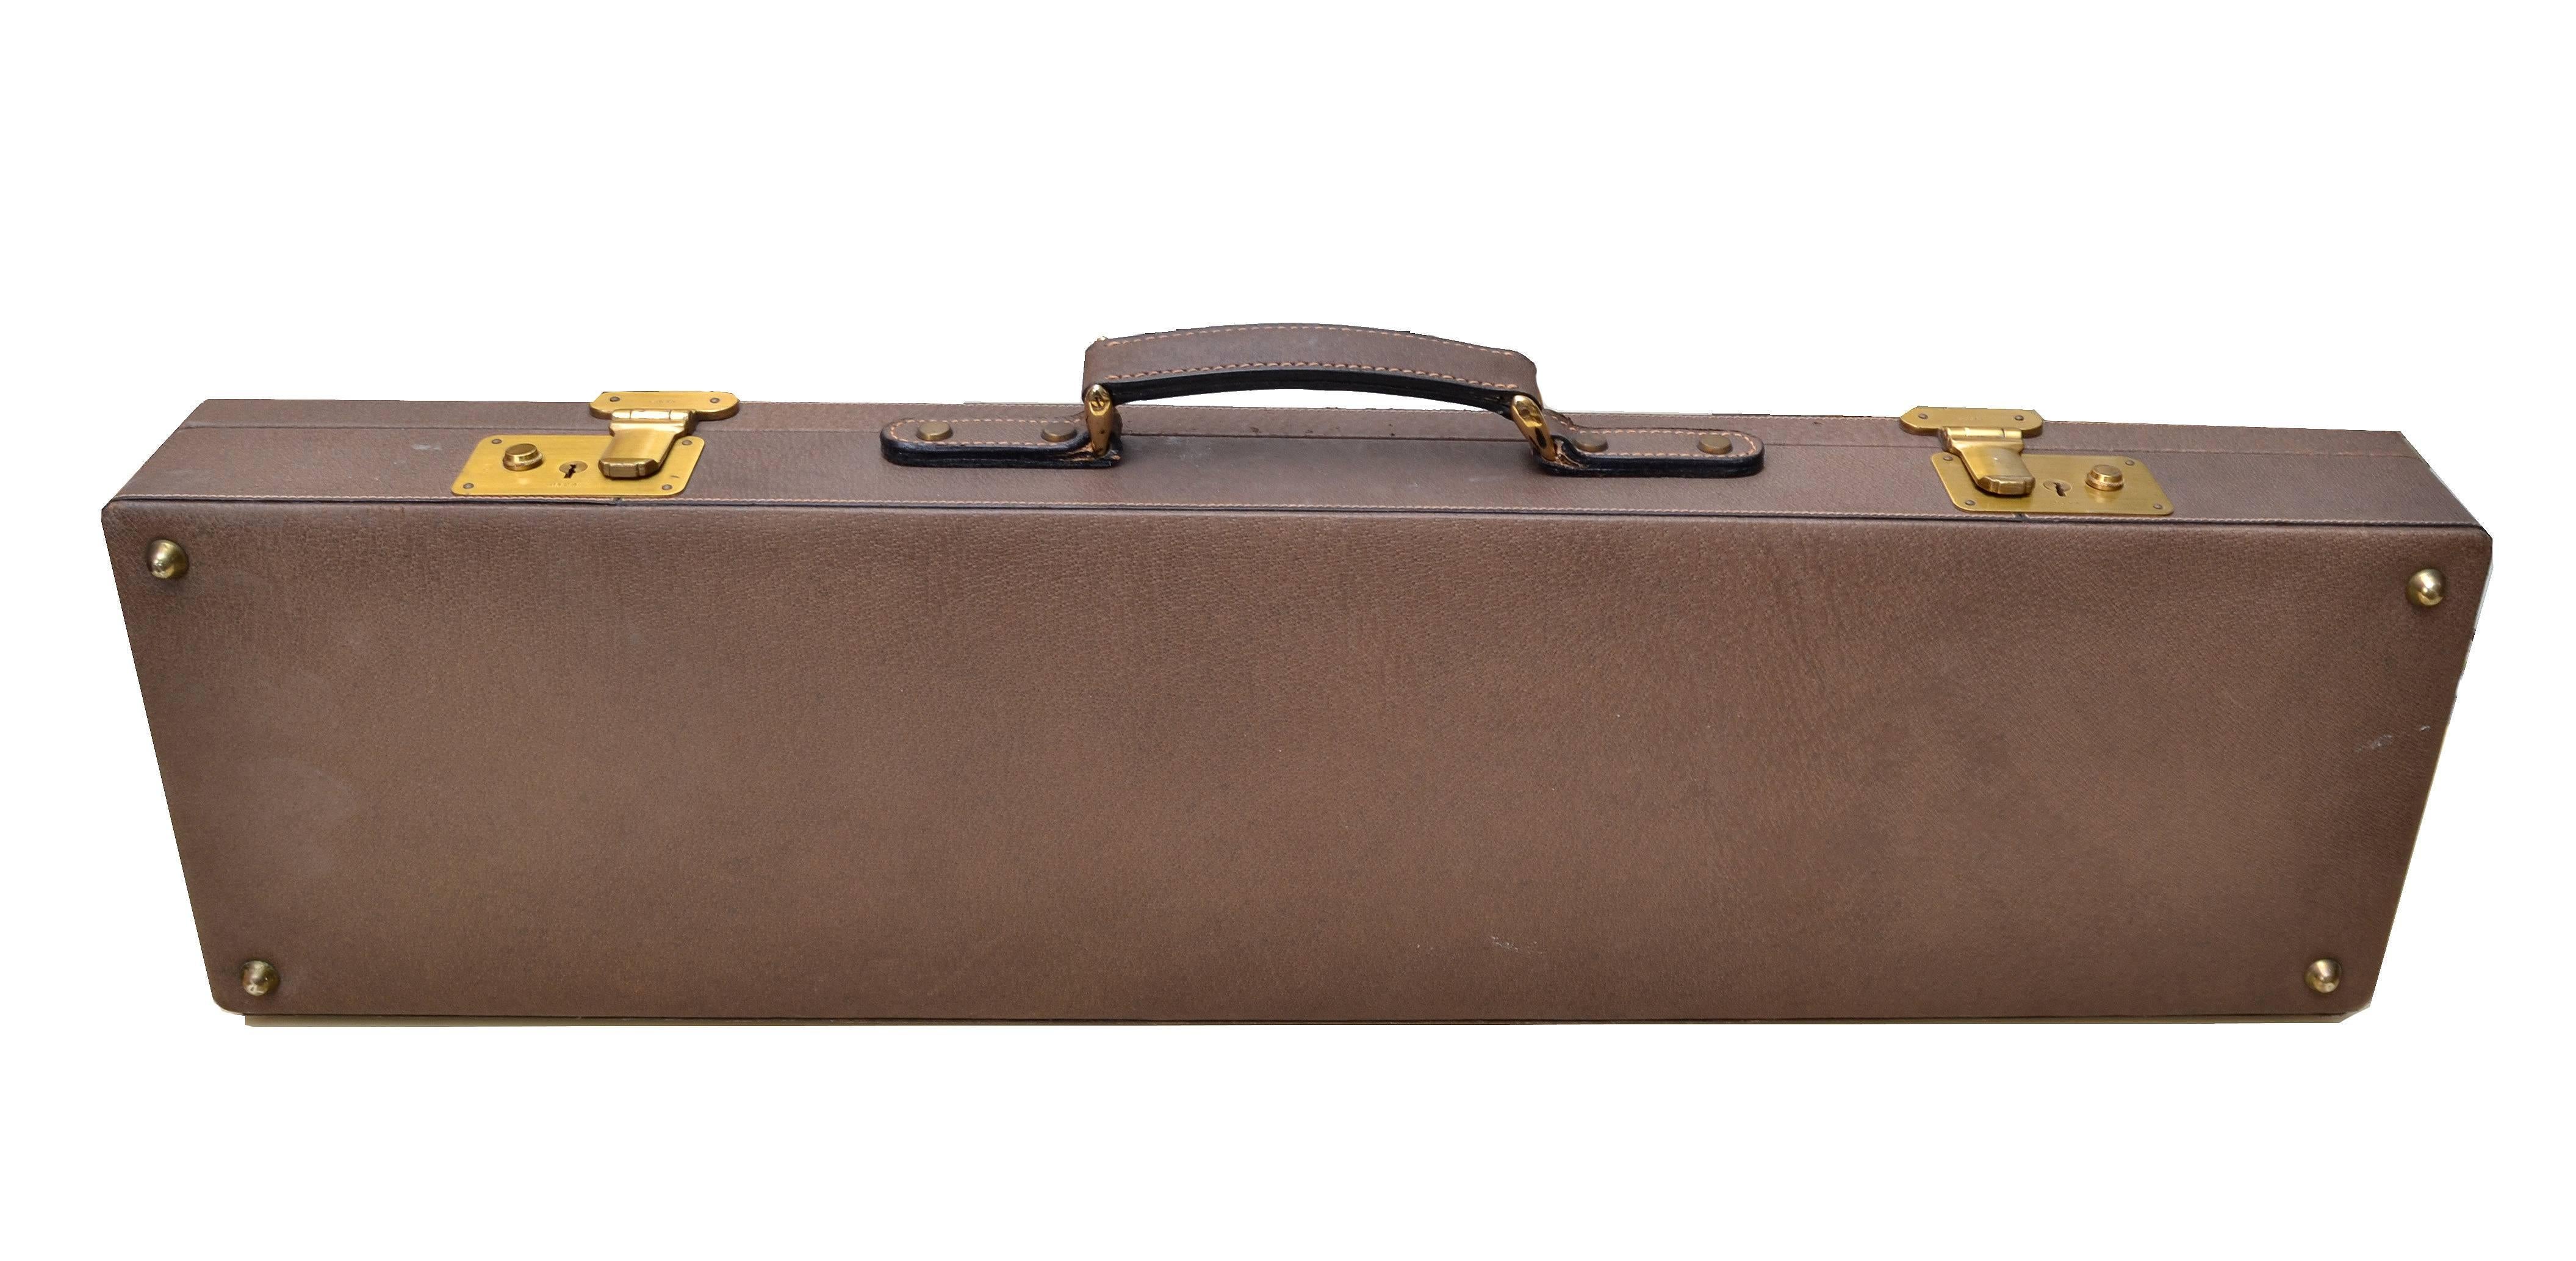 Original Gucci Shotgun Case in Leather and Brass 1